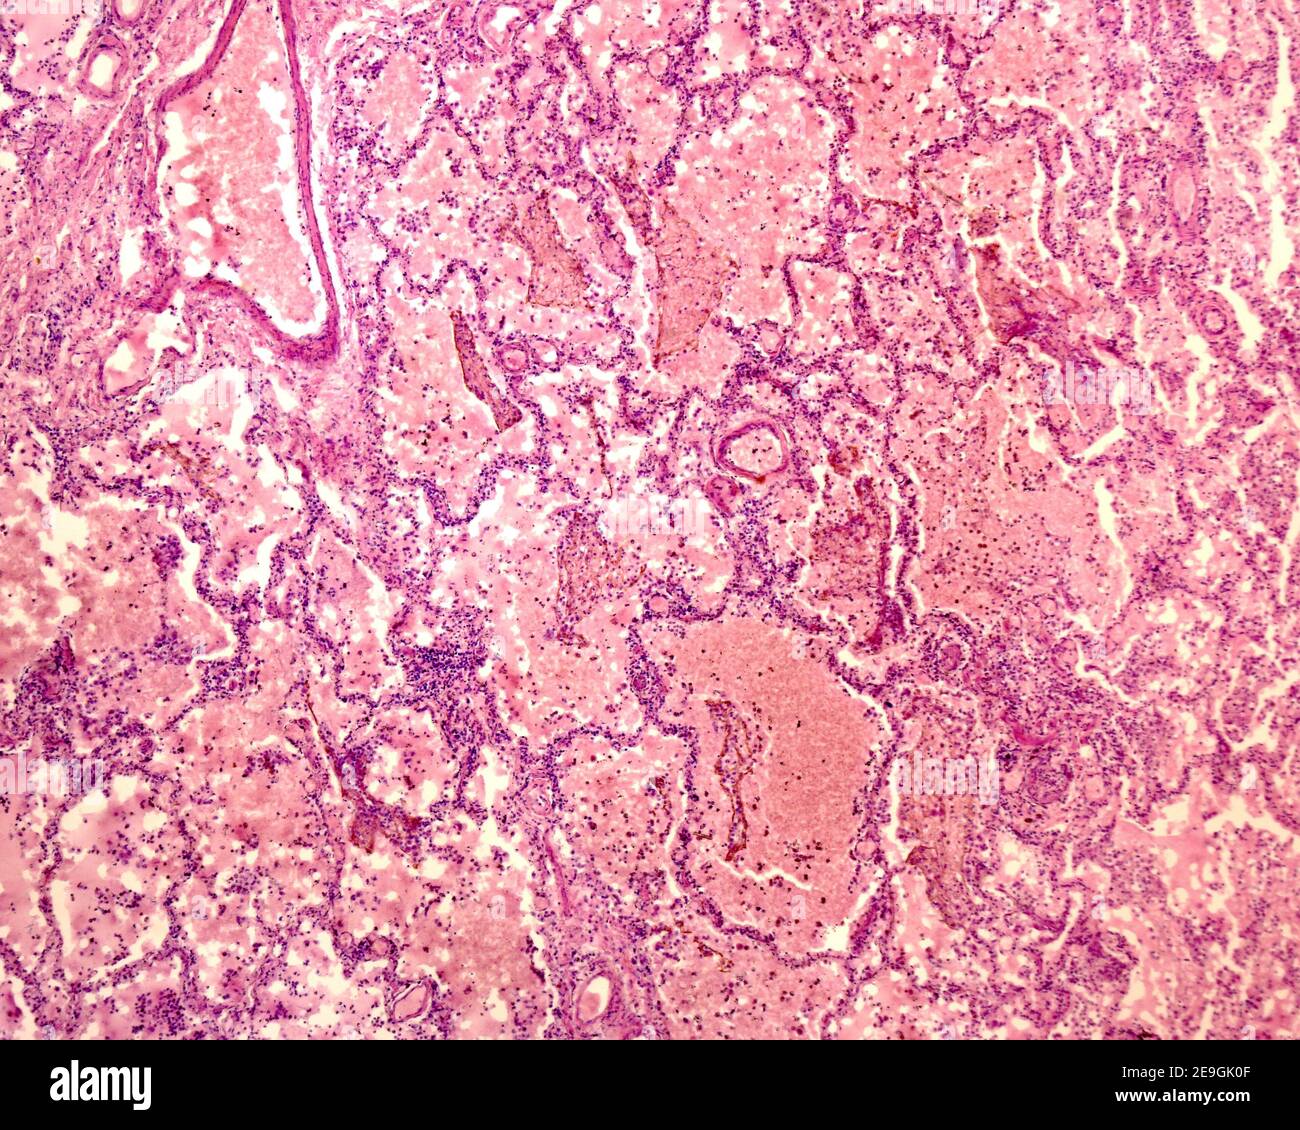 Imagen microscópica de un pulmón con neumonía. Los cordones de células delgadas son los septos alveolares, que delimitan el espacio alveolar, aquí ocupado con leucocitos Foto de stock